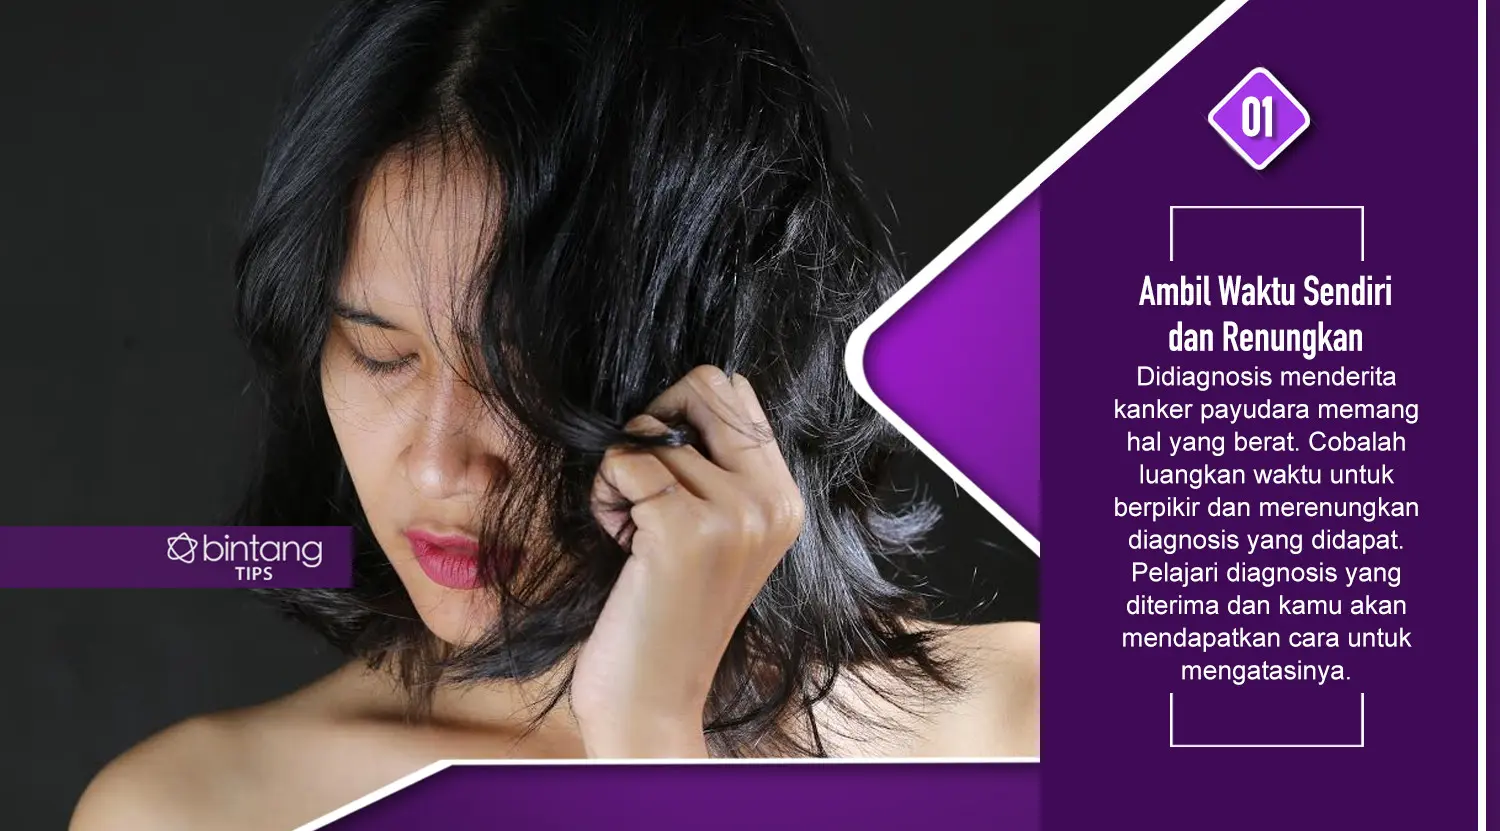 Ini yang harus dilakukan bagi yang baru saja didiagnosis kanker payudara. (Foto: Adrian Putra, Model: Arieni Mayesha, Digital Imaging: M. Iqbal Nurfajri/Bintang.com)